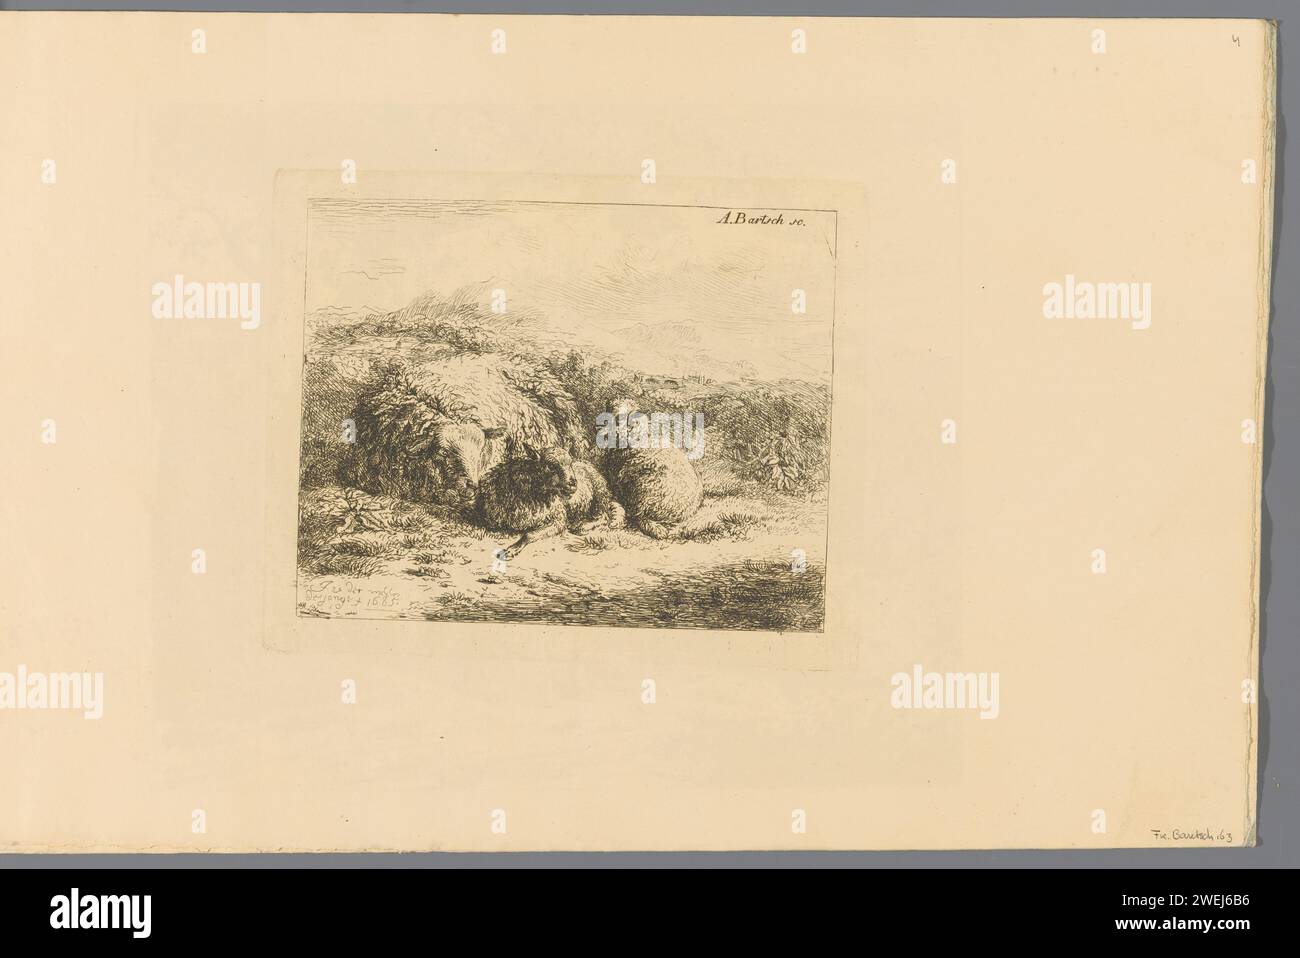 Pecore con due agnelli, Adam von Bartsch, dopo Jan van der Meer (II), 1803 - 1805 stampa questa stampa fa parte di un album. pecore preparate per l'incisione della carta Foto Stock